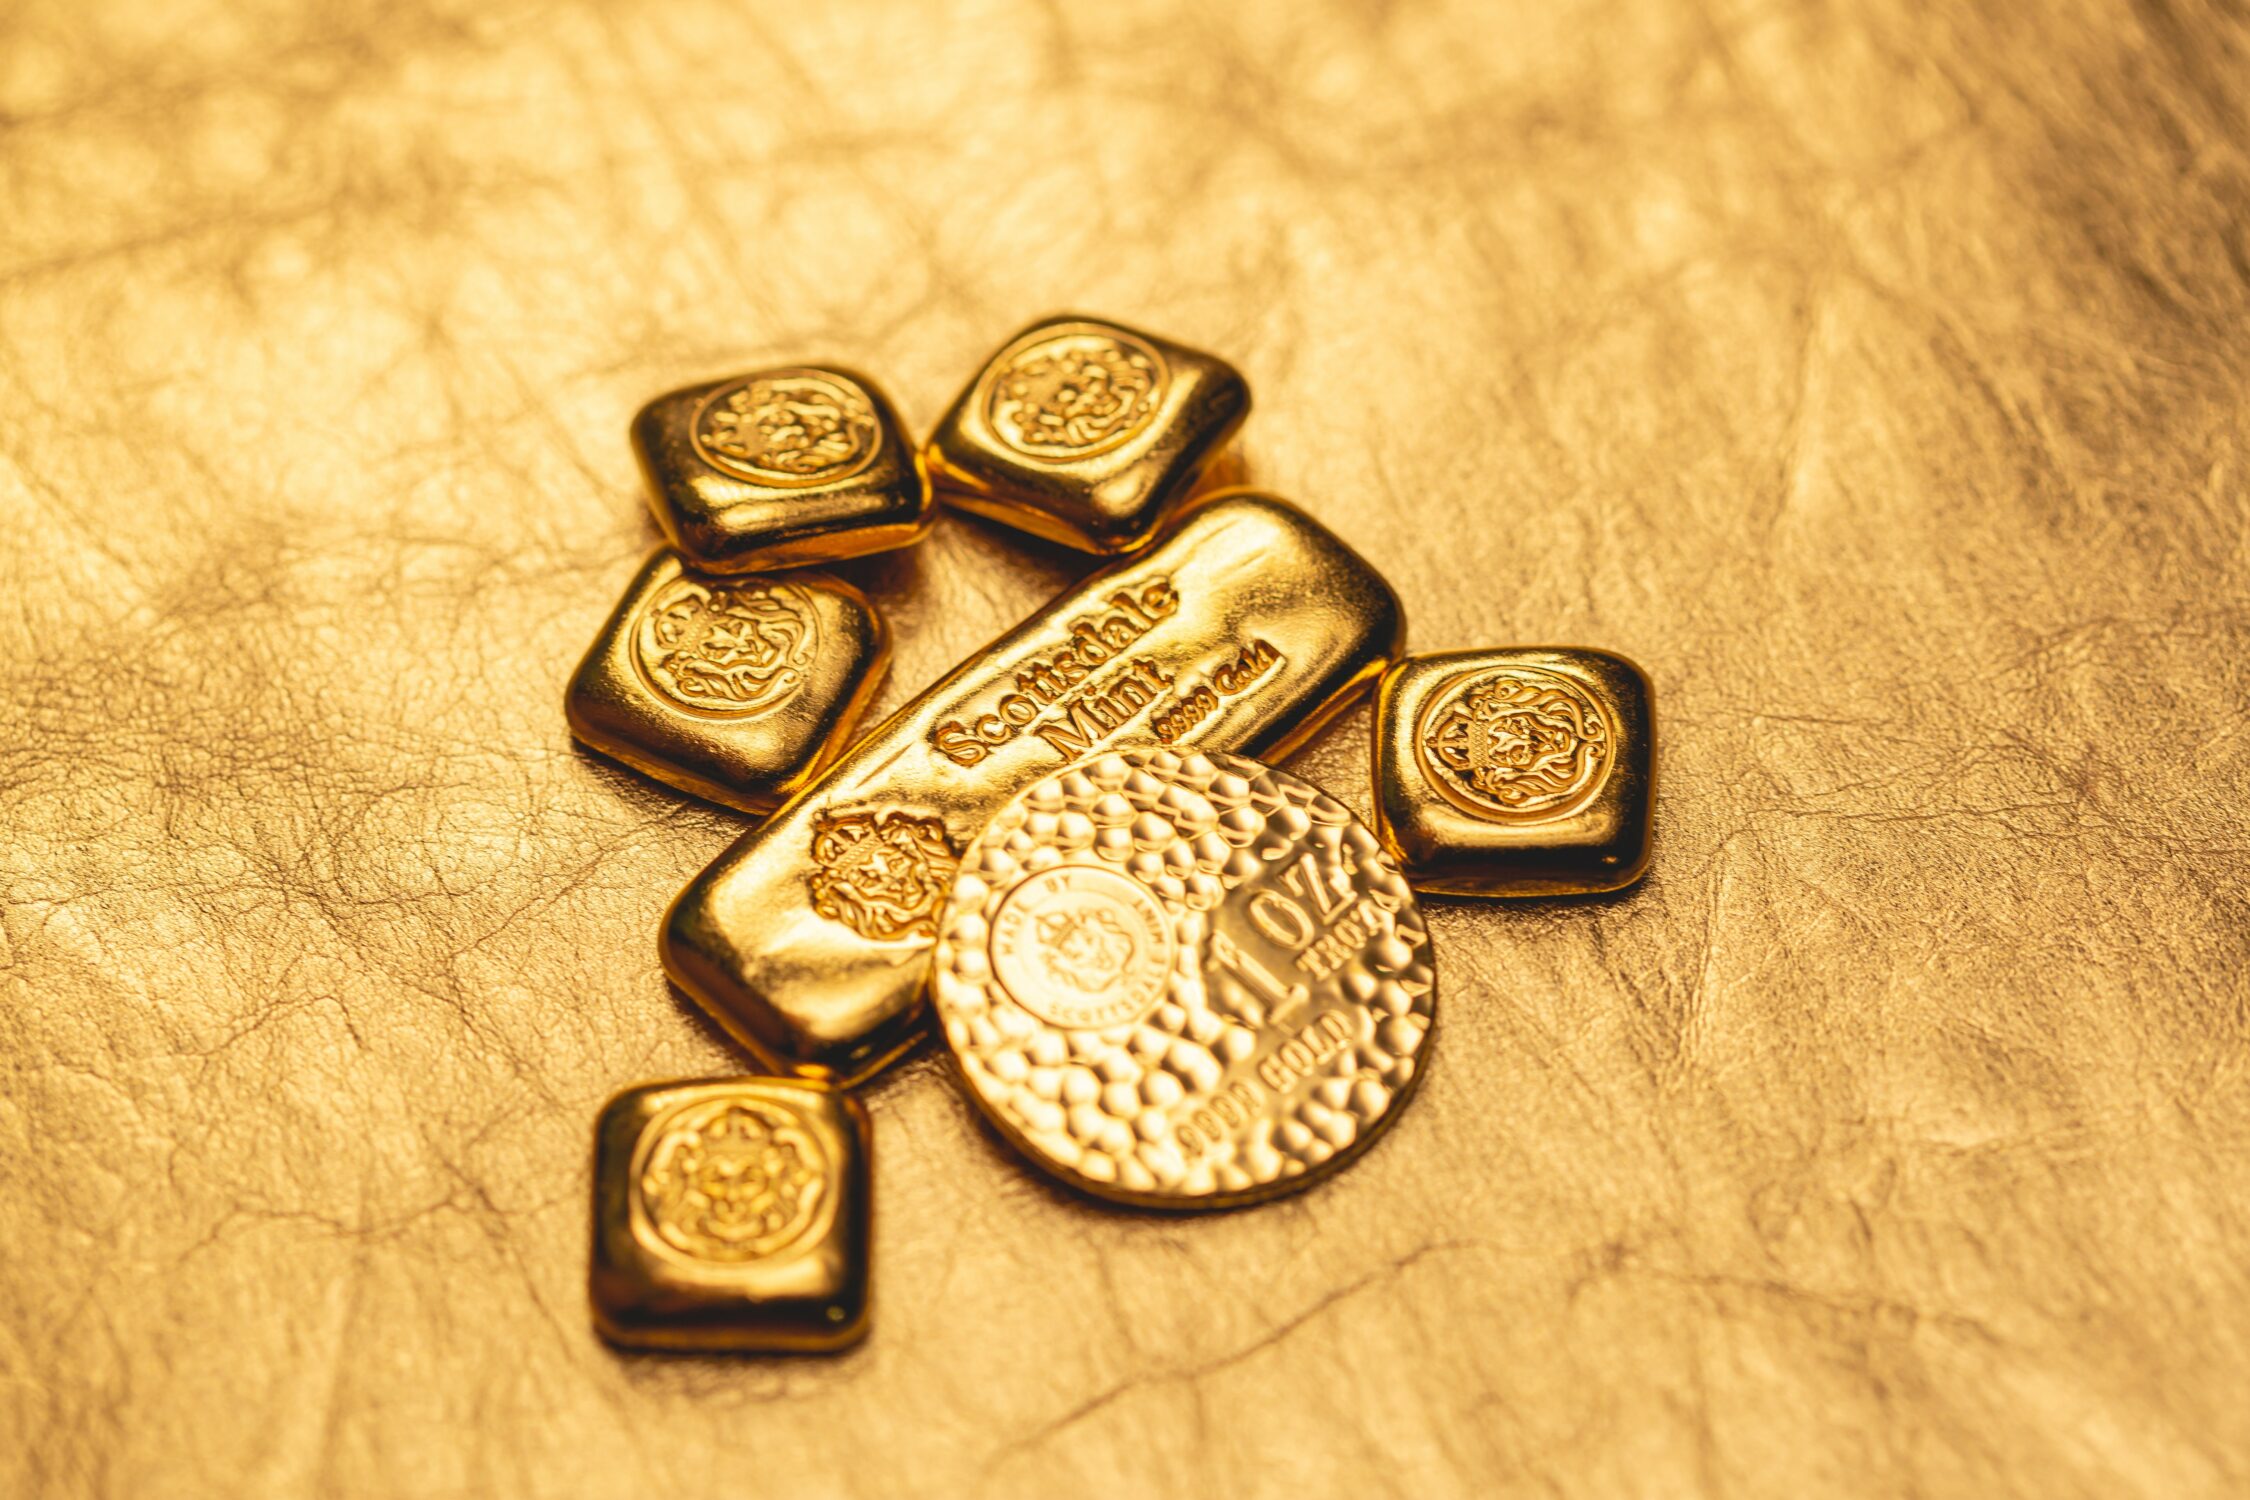 ۹ دلیل مهم برای استفاده از فلز طلا در ساخت جواهرات